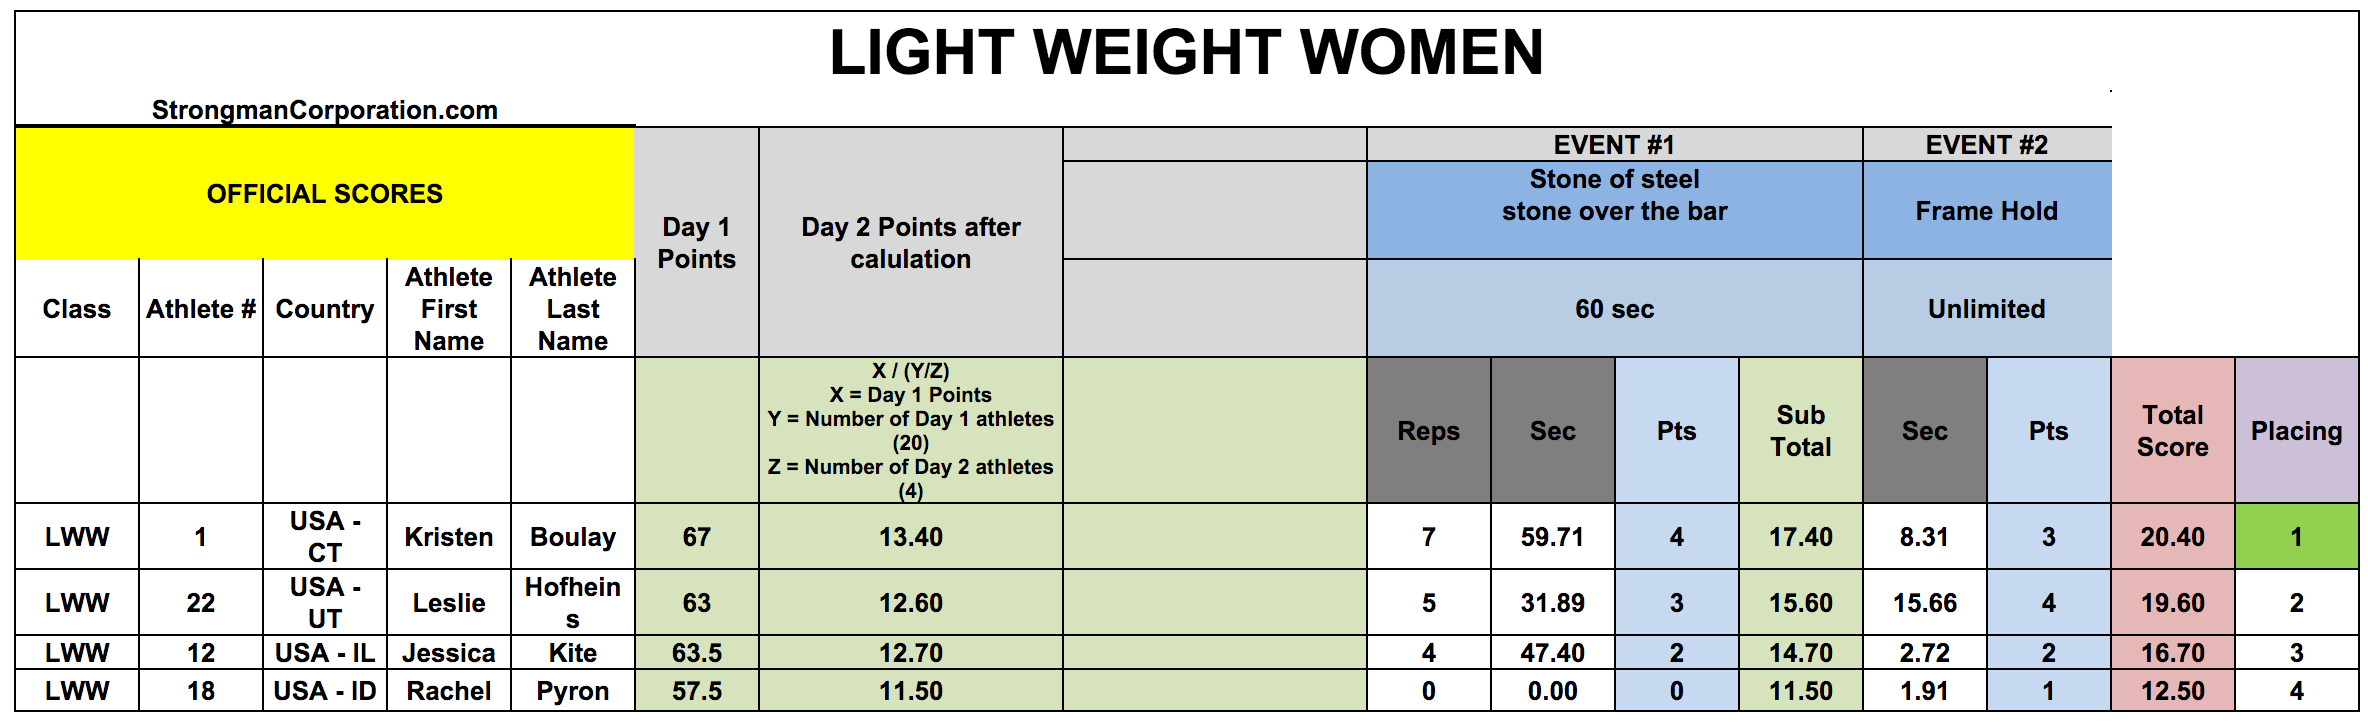 Lightweight Women